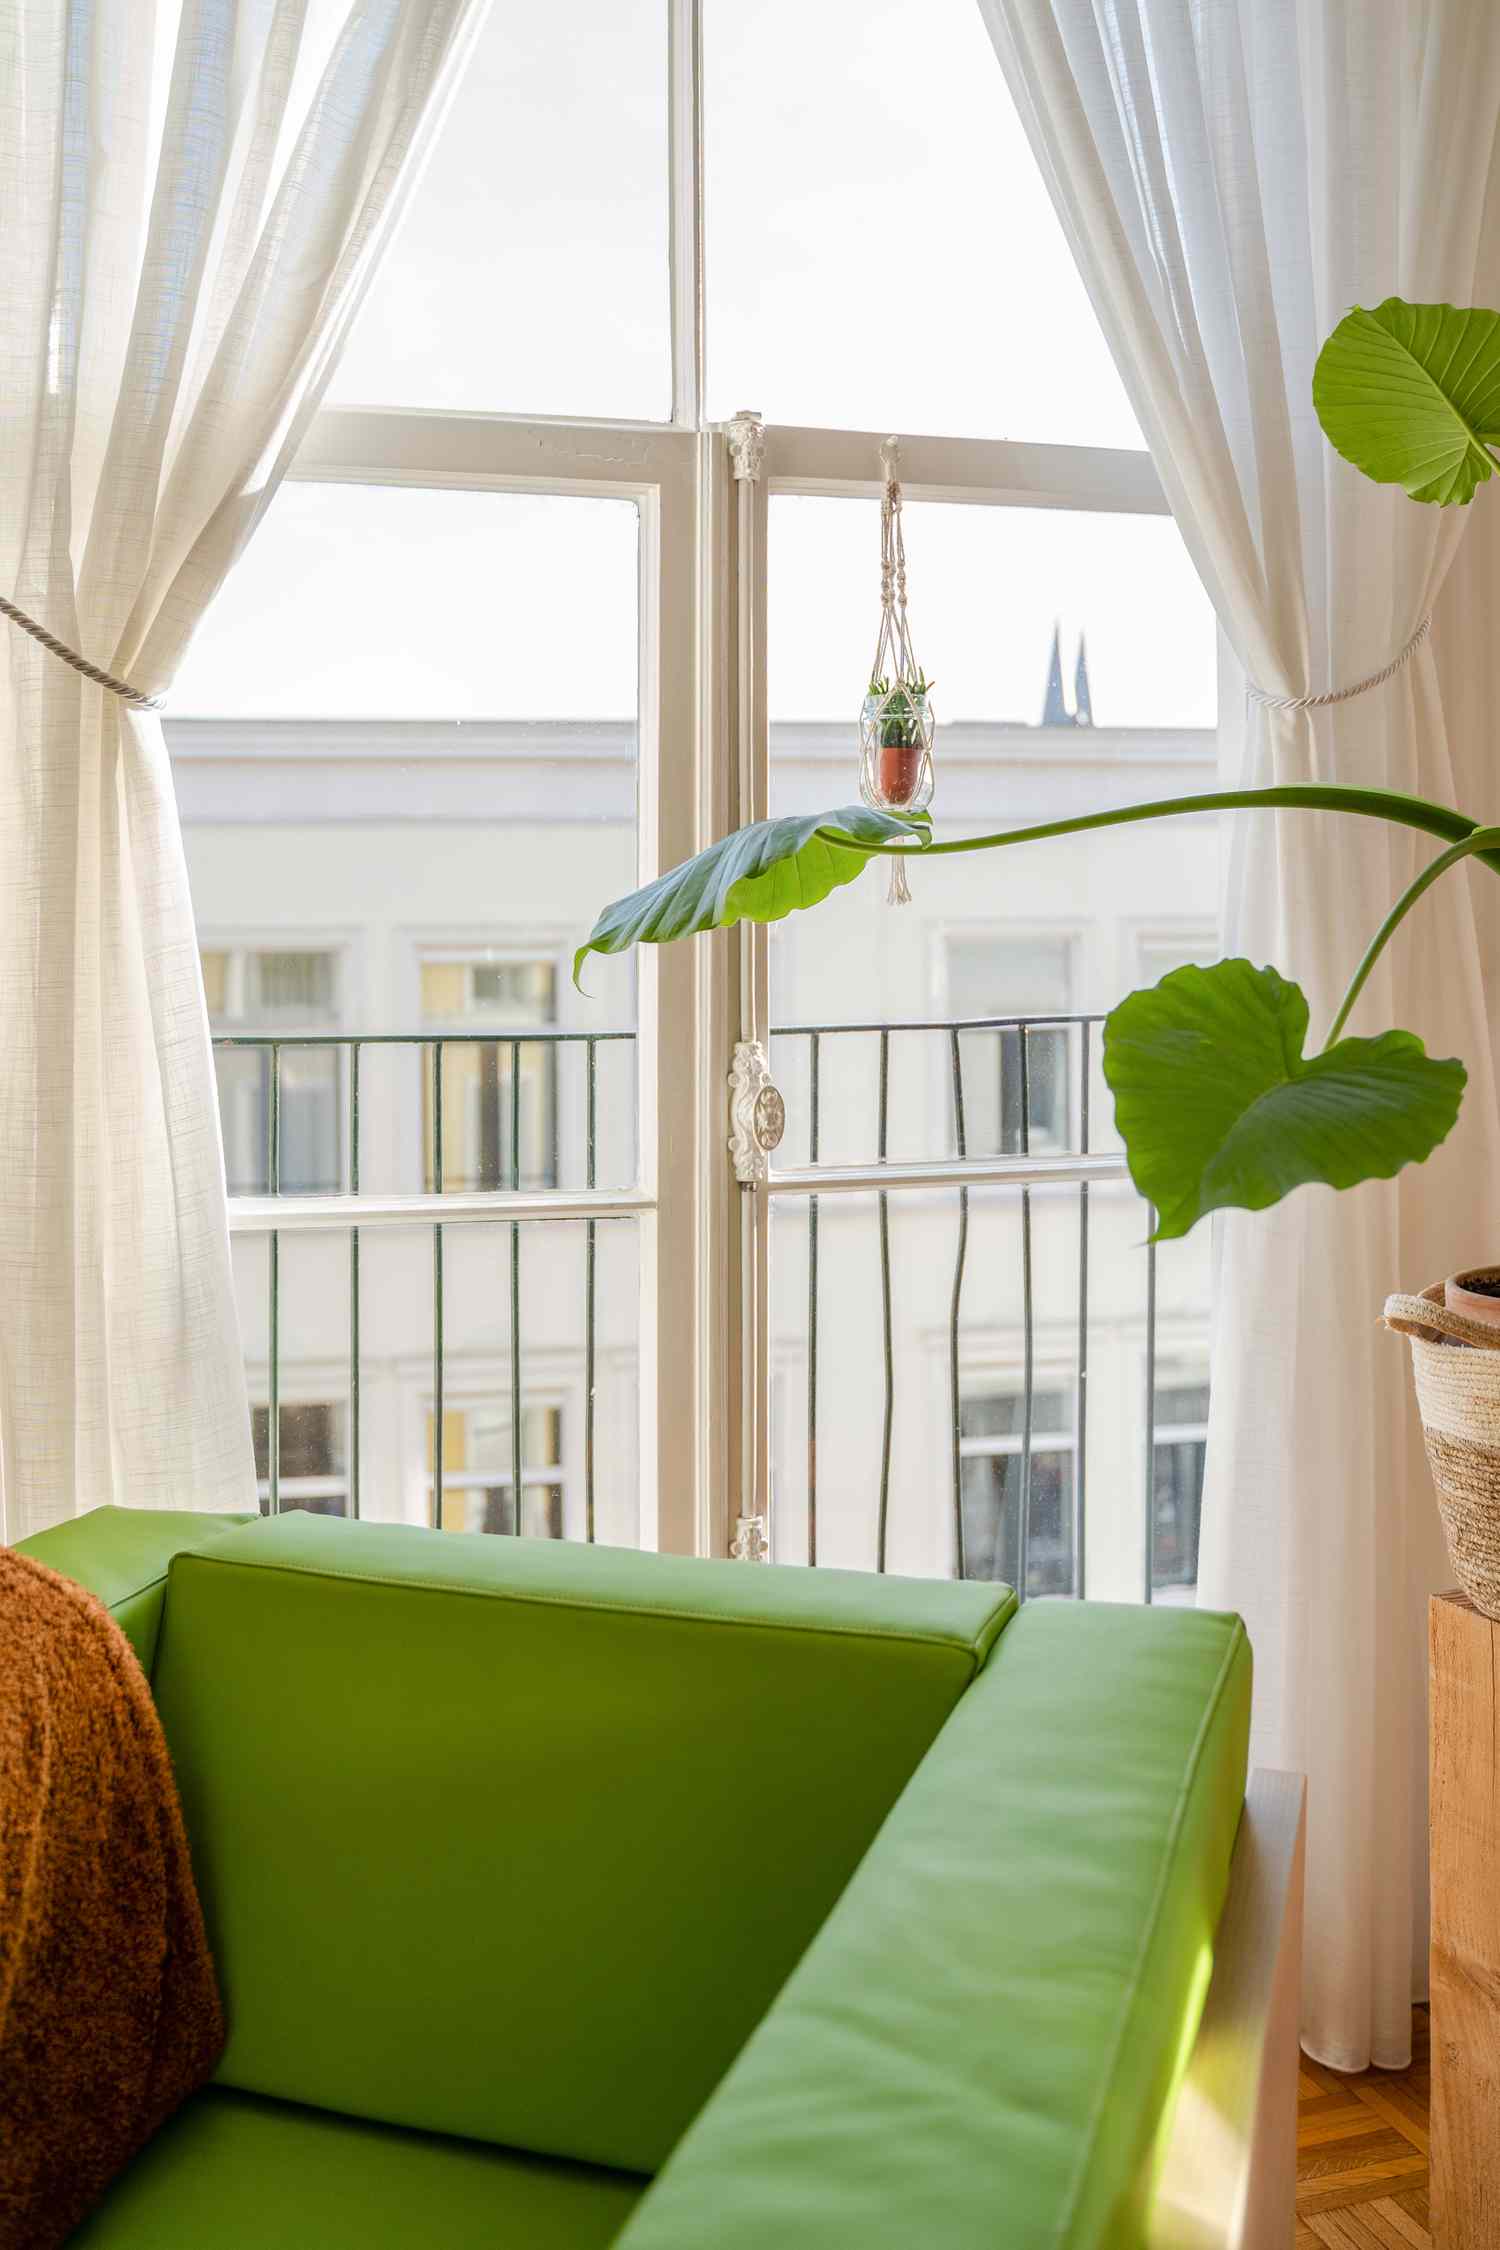 grüner Sessel und grüne Pflanze neben einem Fenster mit weißen Vorhängen